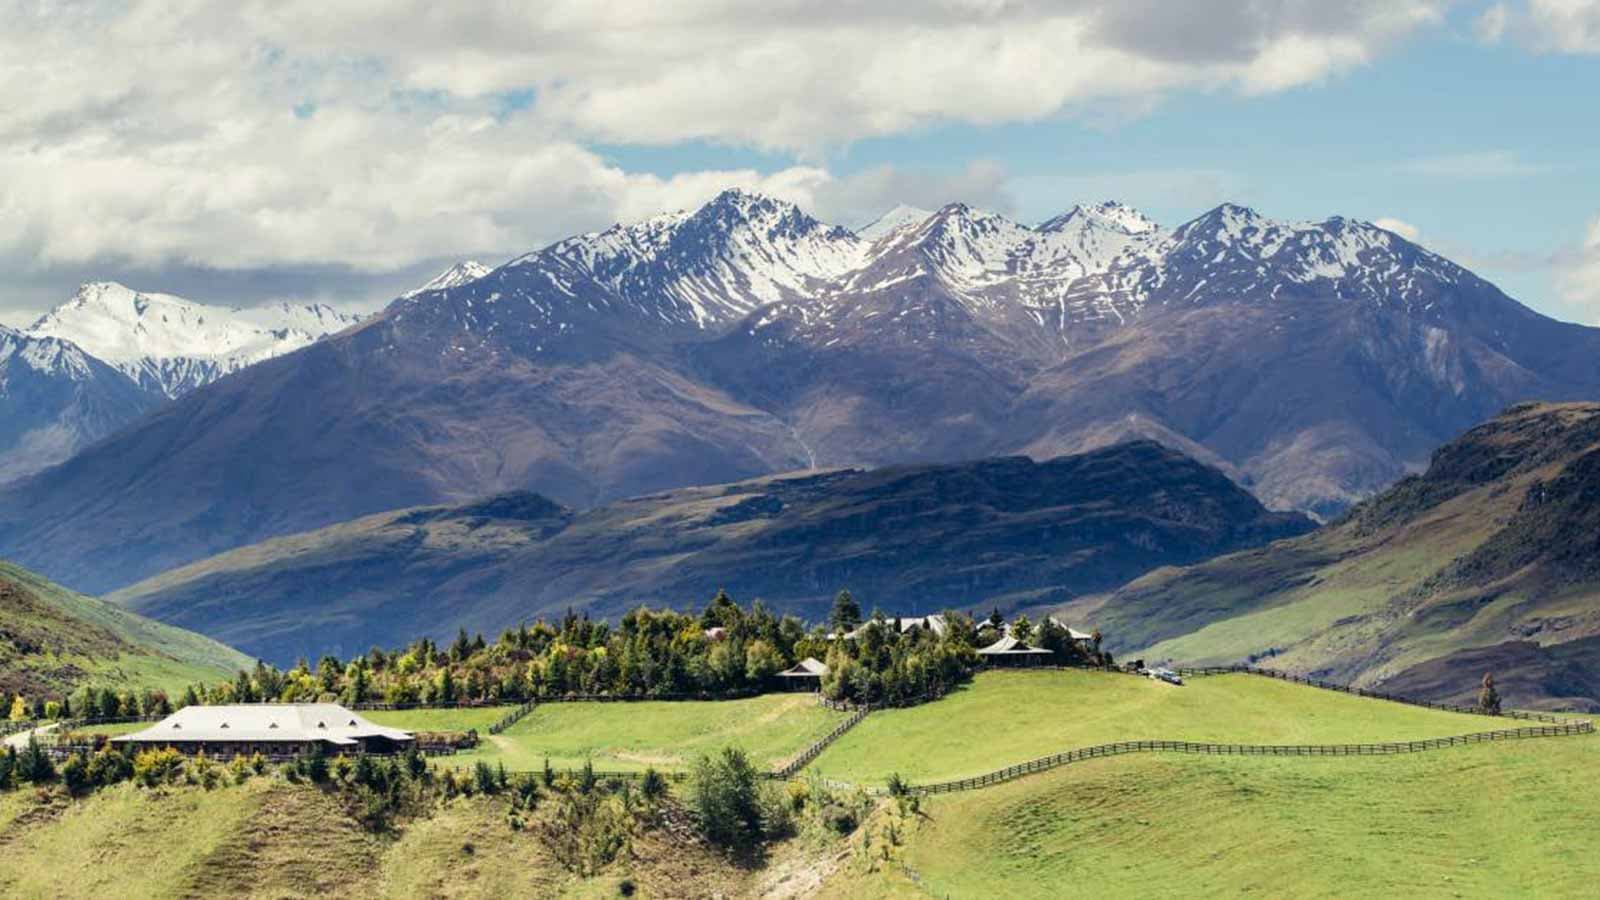 Hành trình kỳ thú khám phá miền Nam hùng vĩ của đảo quốc New Zealand